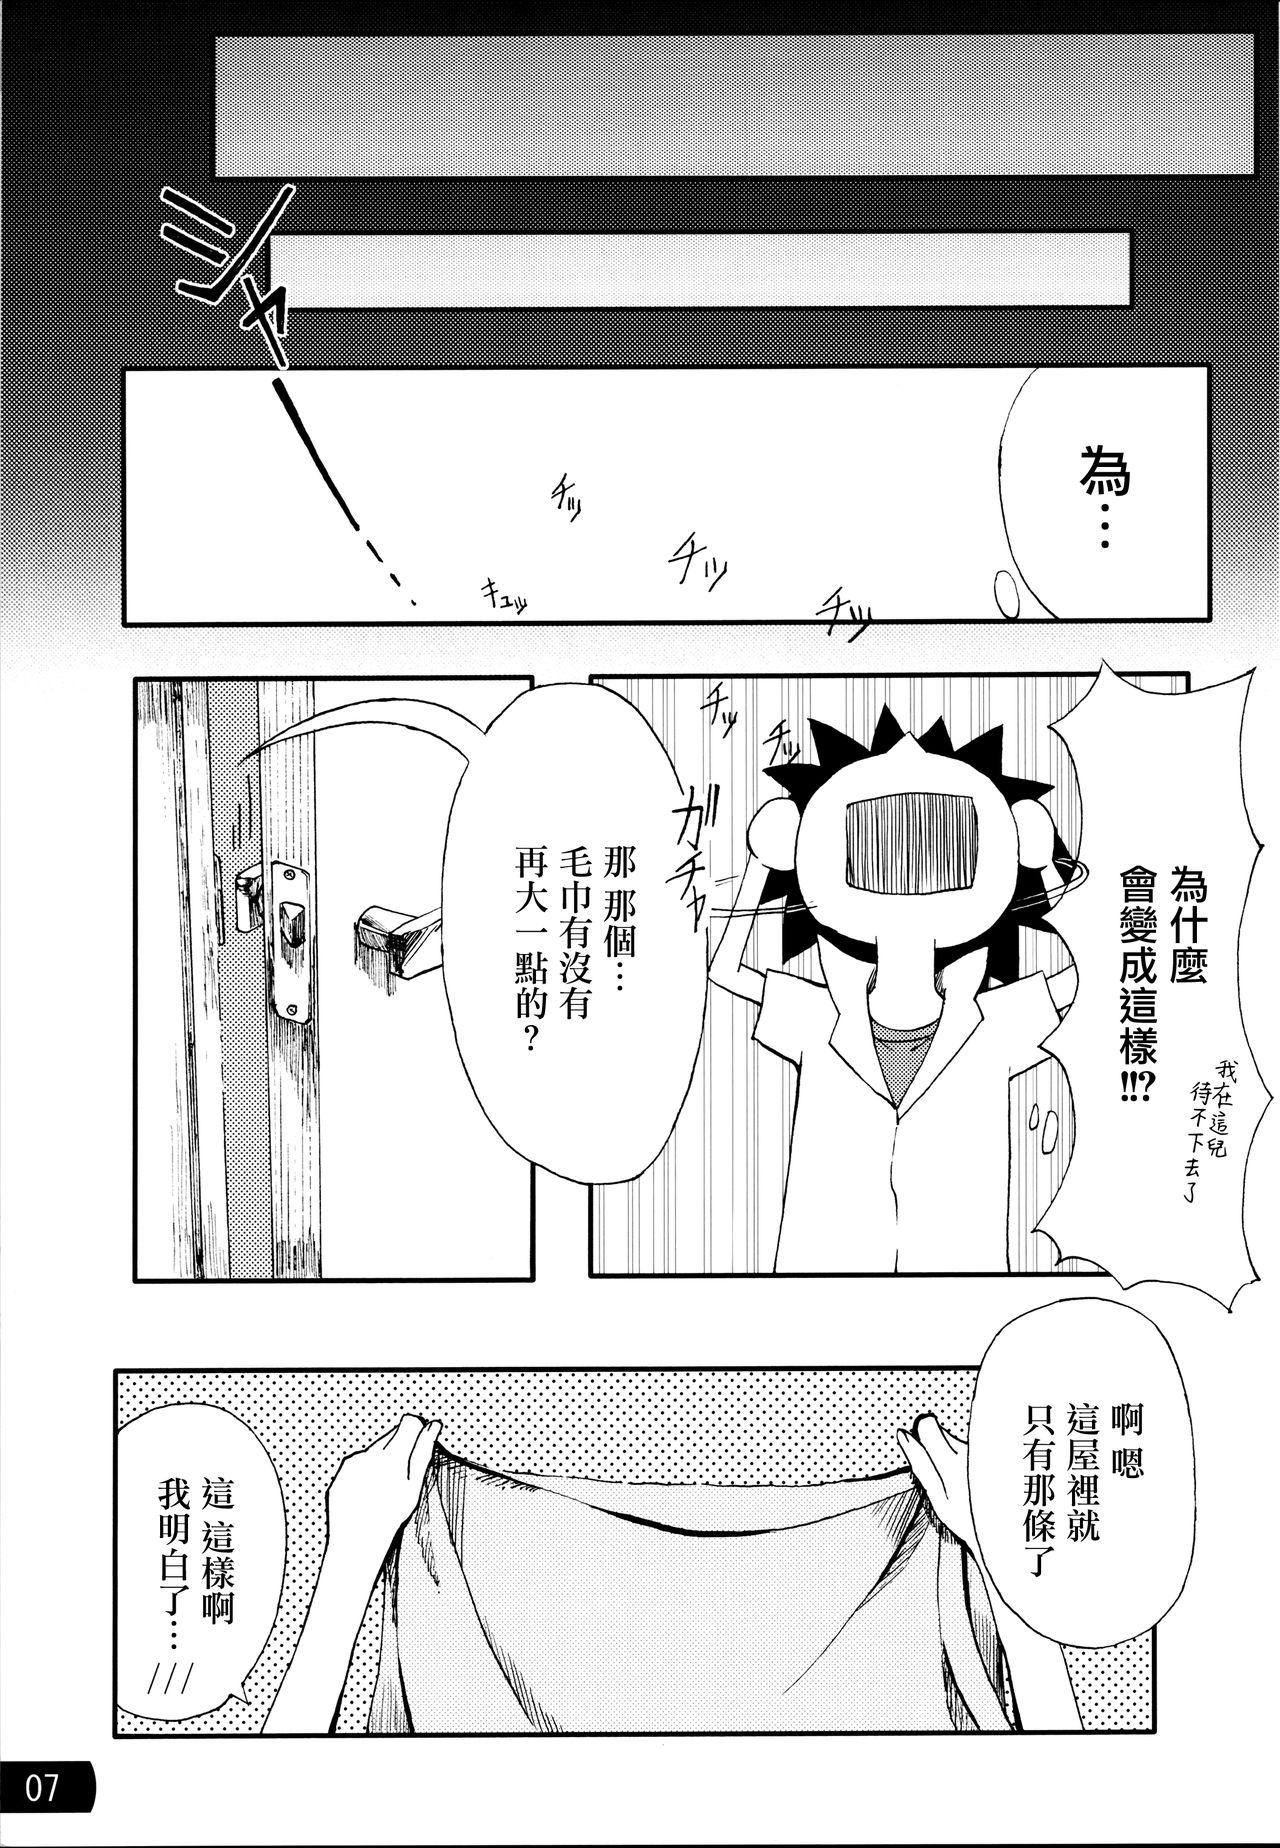 Naked Sluts Toaru mousou no chou denji hon 02 - Toaru kagaku no railgun Glam - Page 6